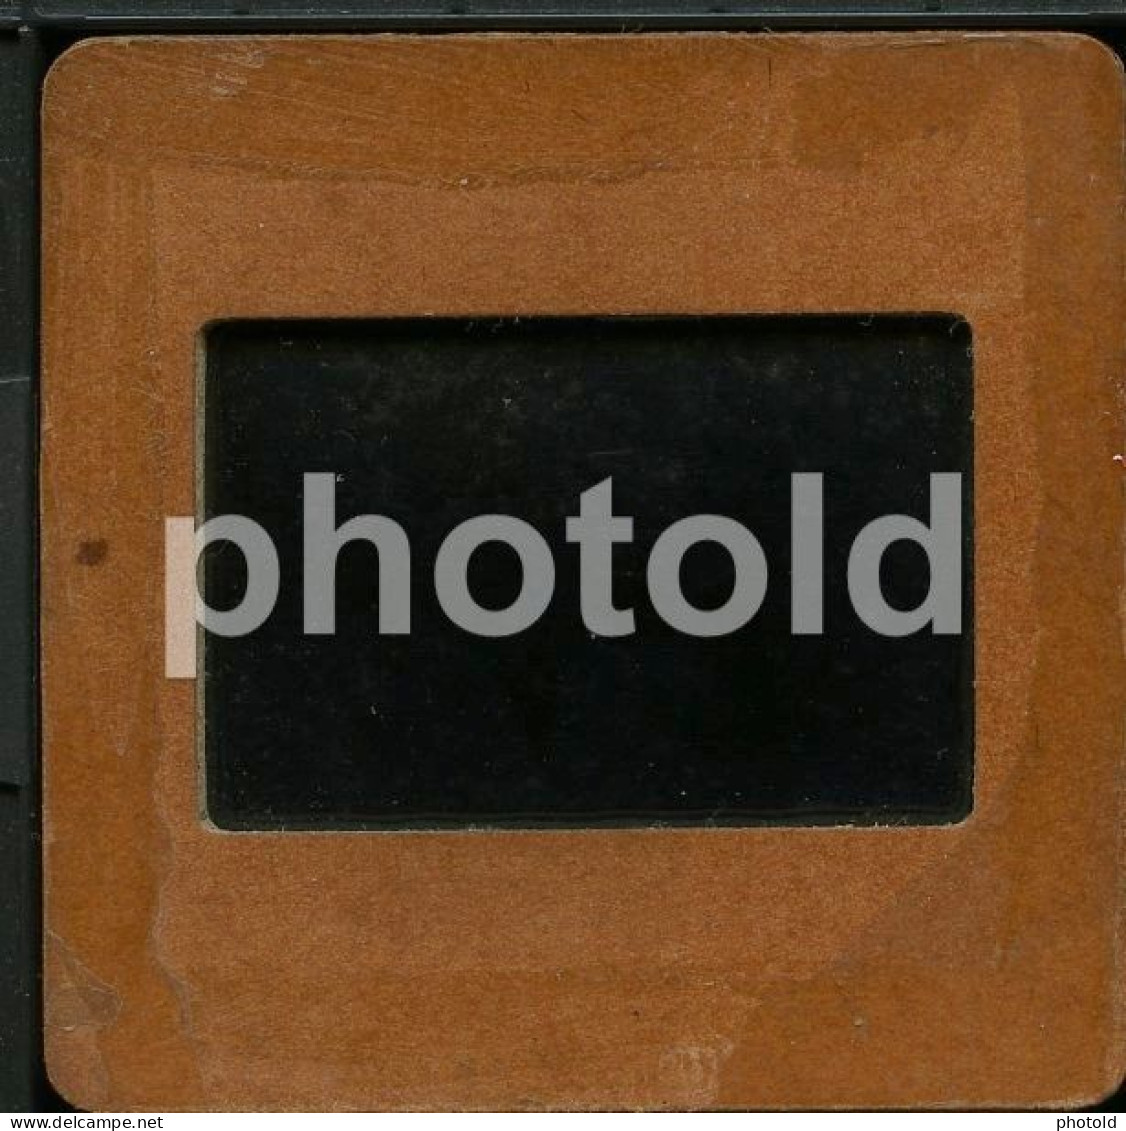 1949 SEVILLA ANDALUCIA ESPANA SPAIN 35mm AMATEUR  DIAPOSITIVE SLIDE NO PHOTO FOTO NB2797 - Diapositives